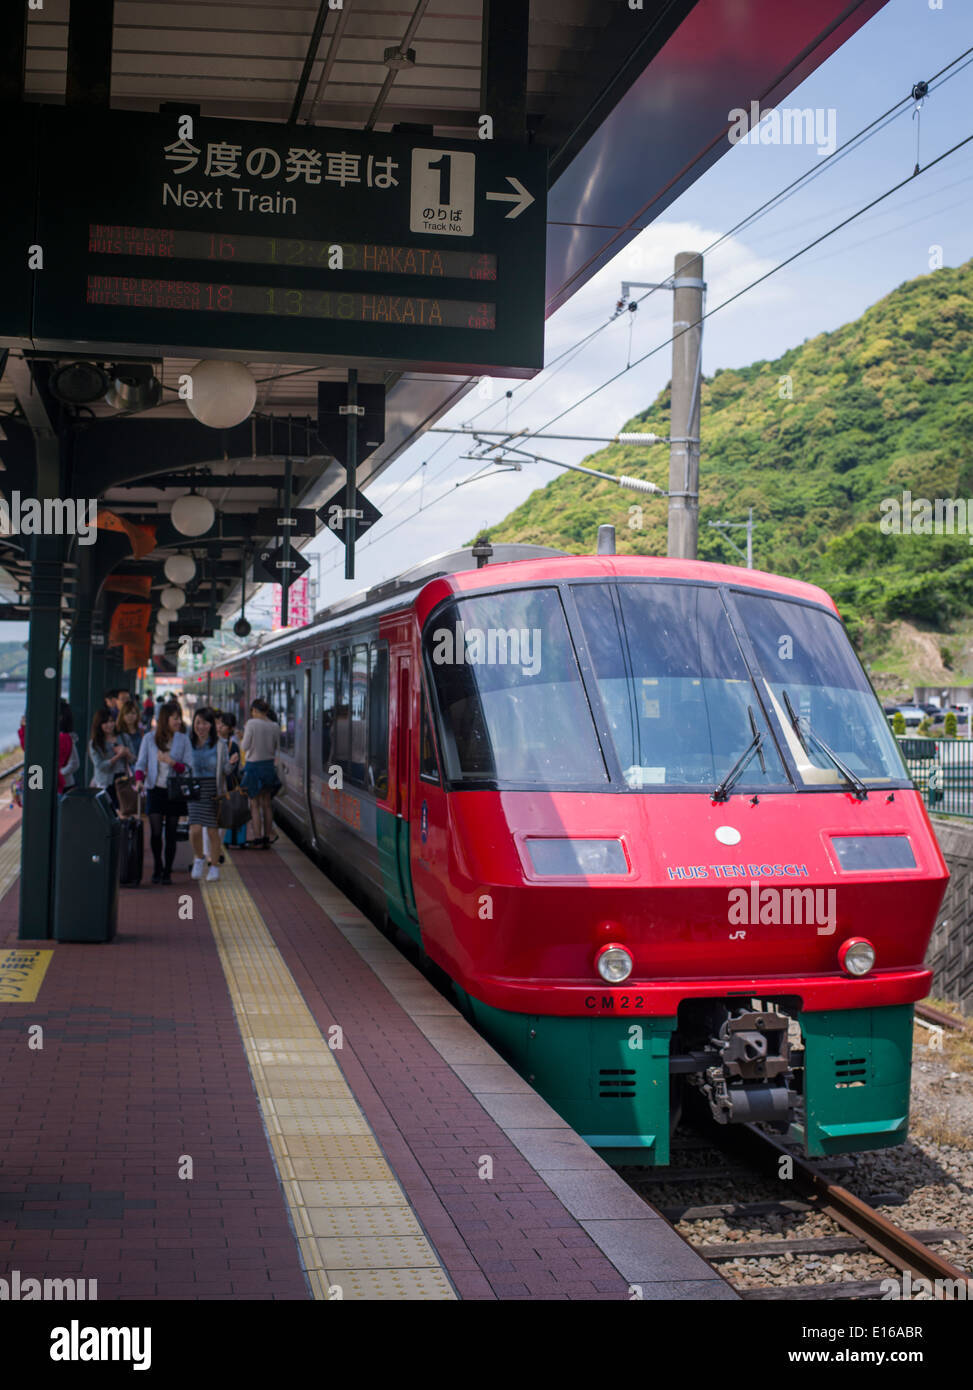 JR express train arrive à Huis Ten Bosch, un parc à thème à Sasebo, Nagasaki, Japon. Pays-bas et recrée les bâtiments néerlandais. Banque D'Images